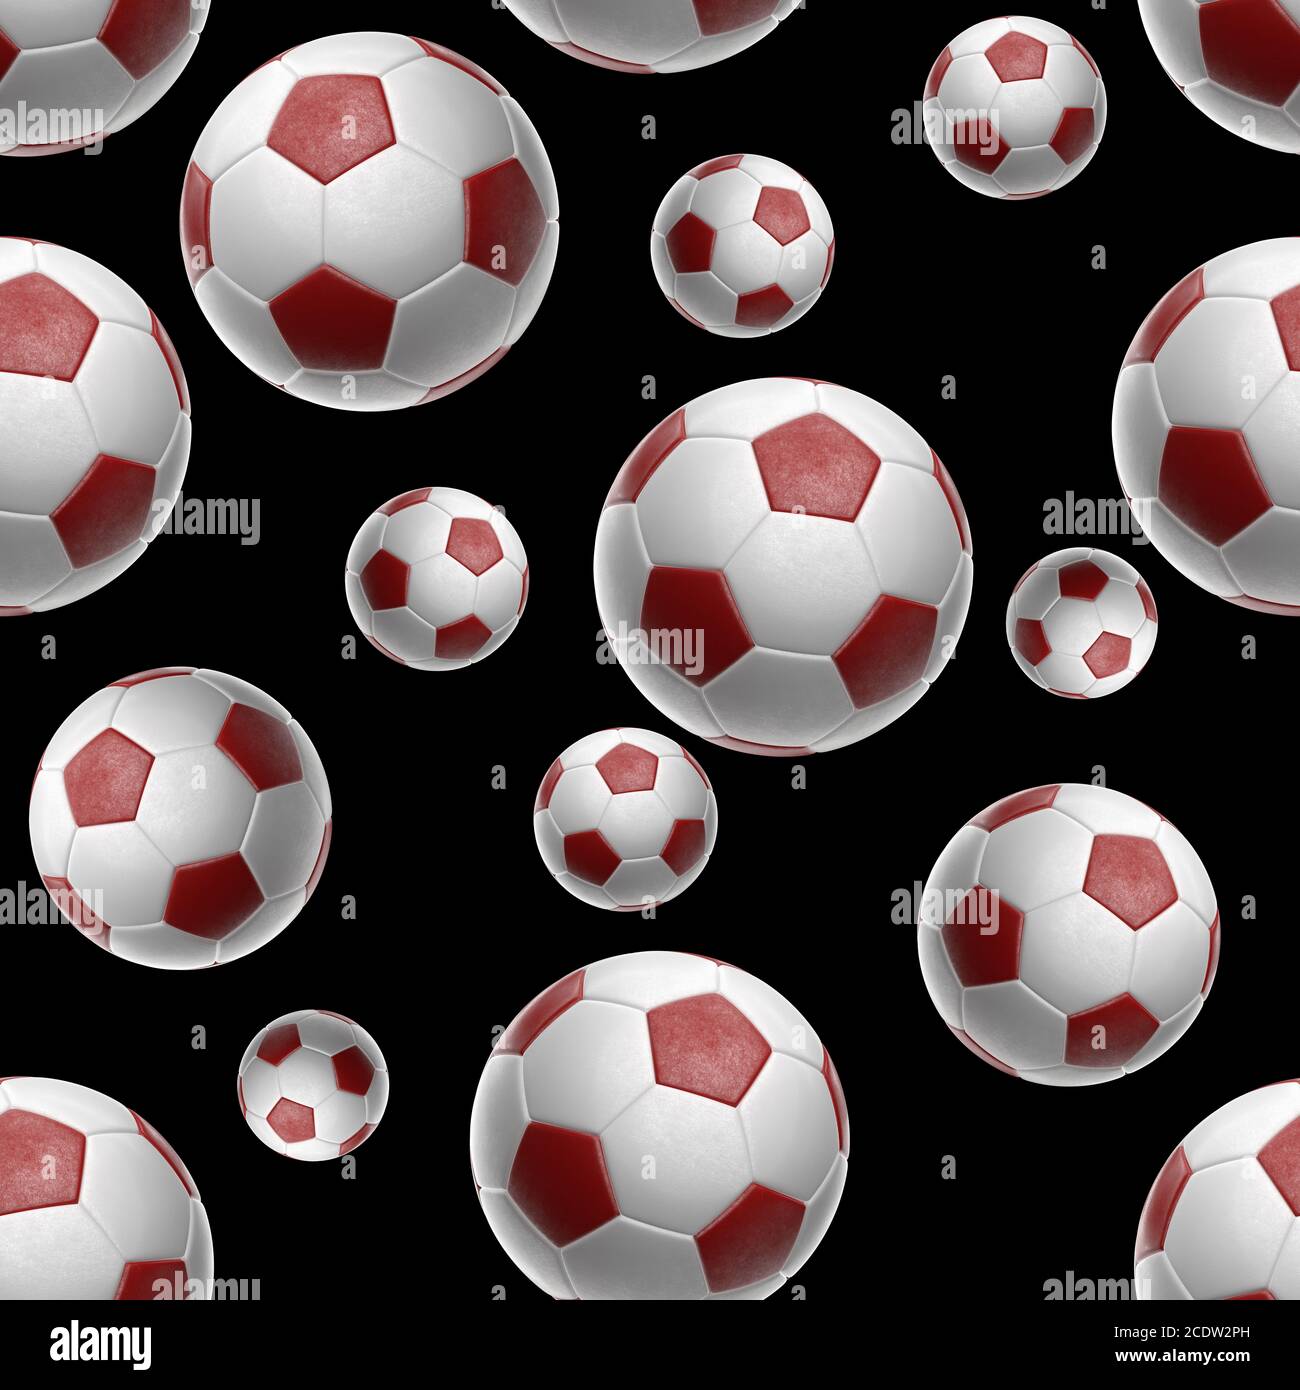 Soccer-sfere isolati su sfondo nero seamless pattern 3d illustrazione Foto Stock